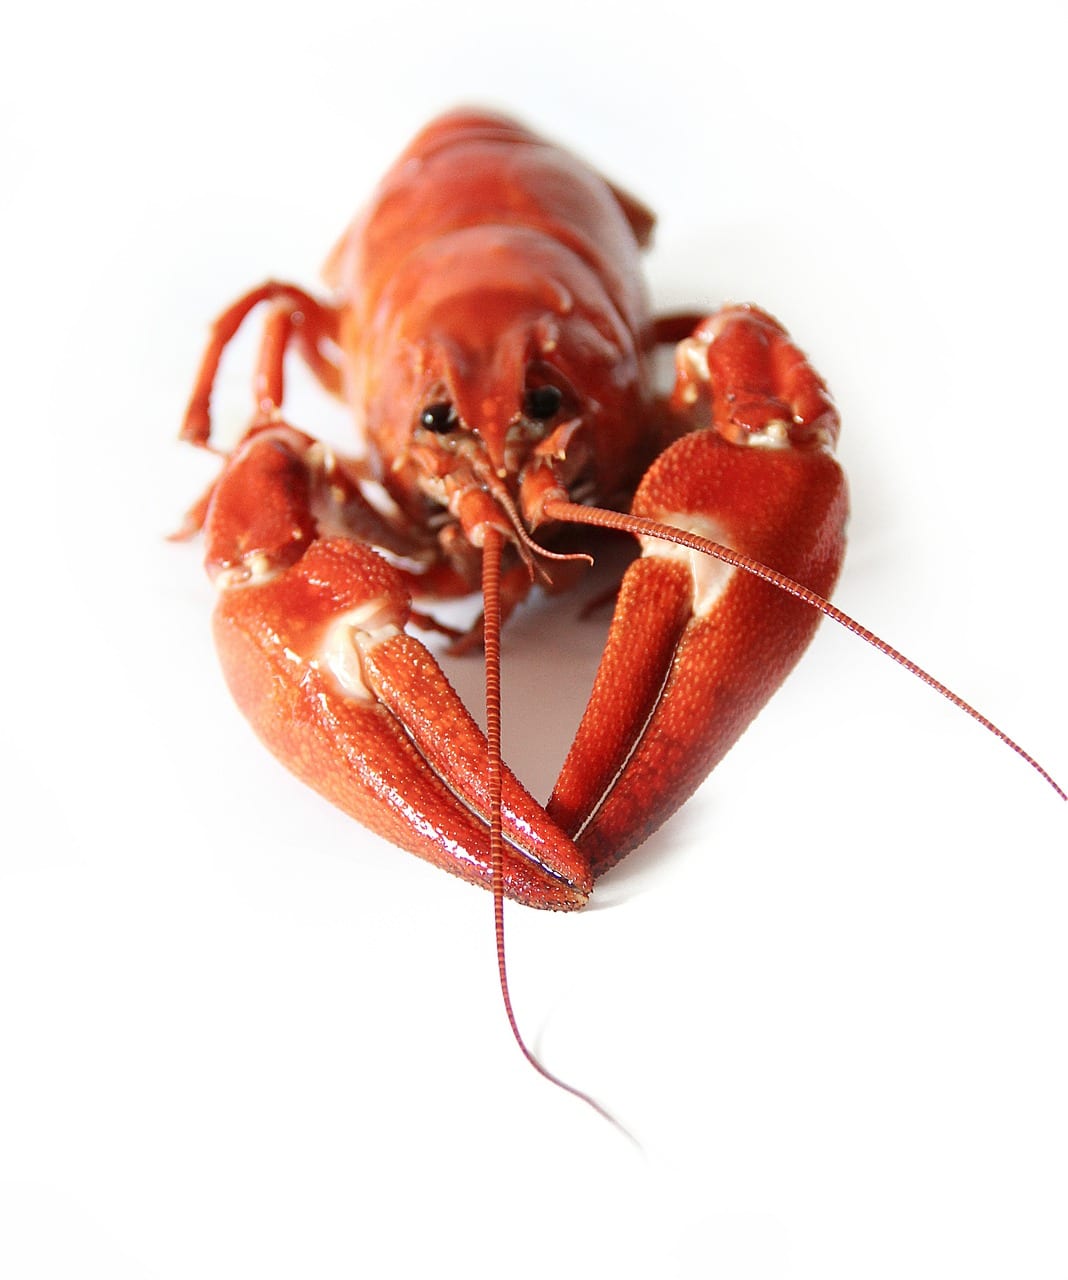 basic ingredients crayfish